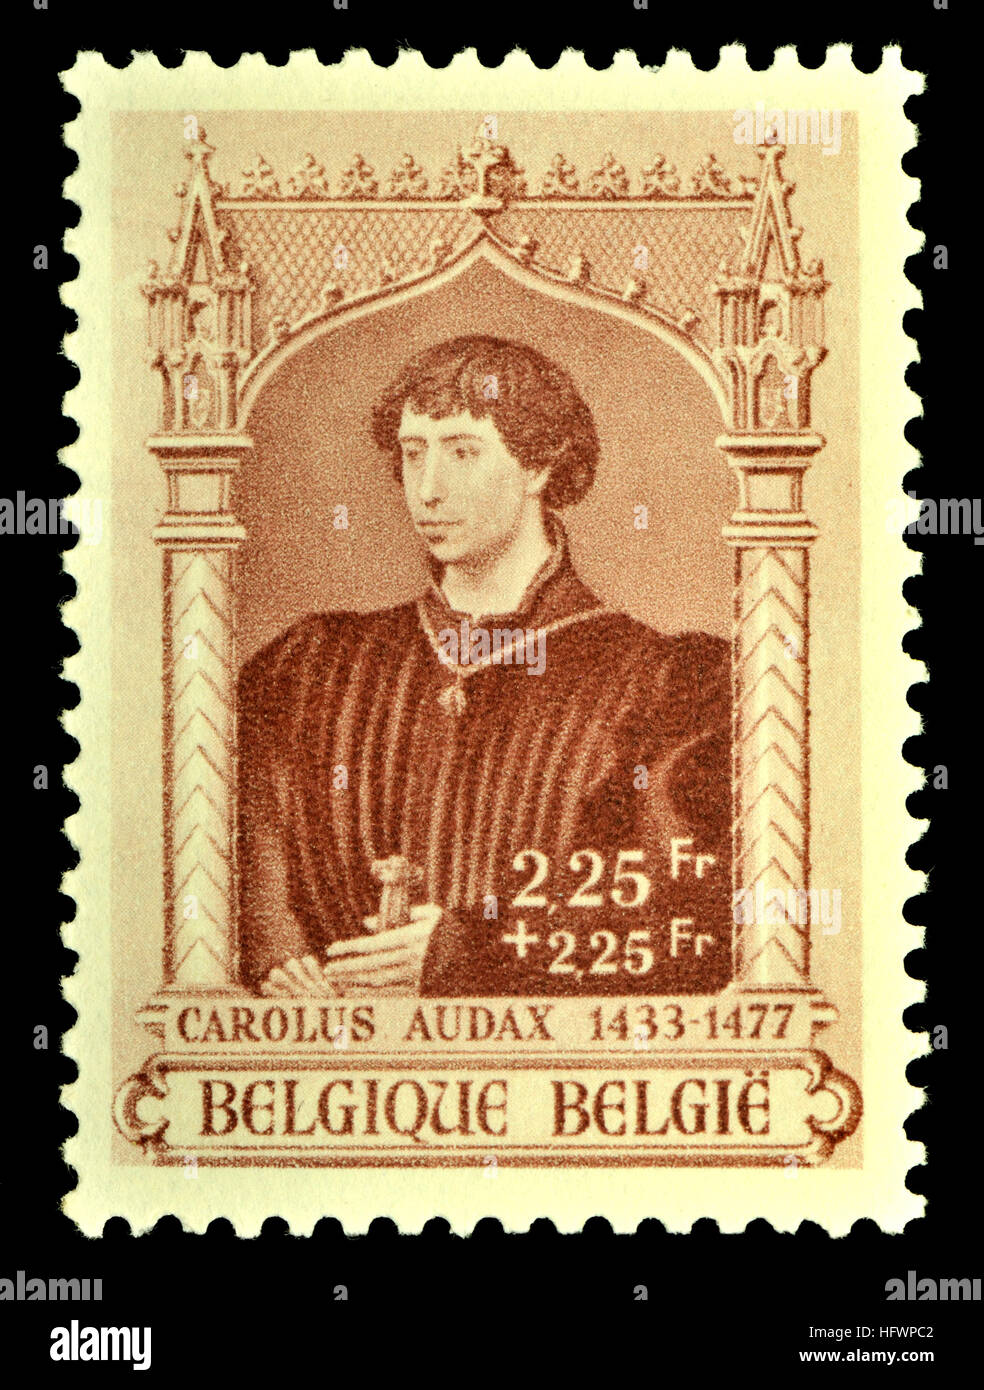 Belgische Briefmarke (1941): Karl der kühne / Charles le Téméraire / Karel de Stoute (1433-1477) letzten Herzog von Burgund aus dem Haus Valois - Stockfoto